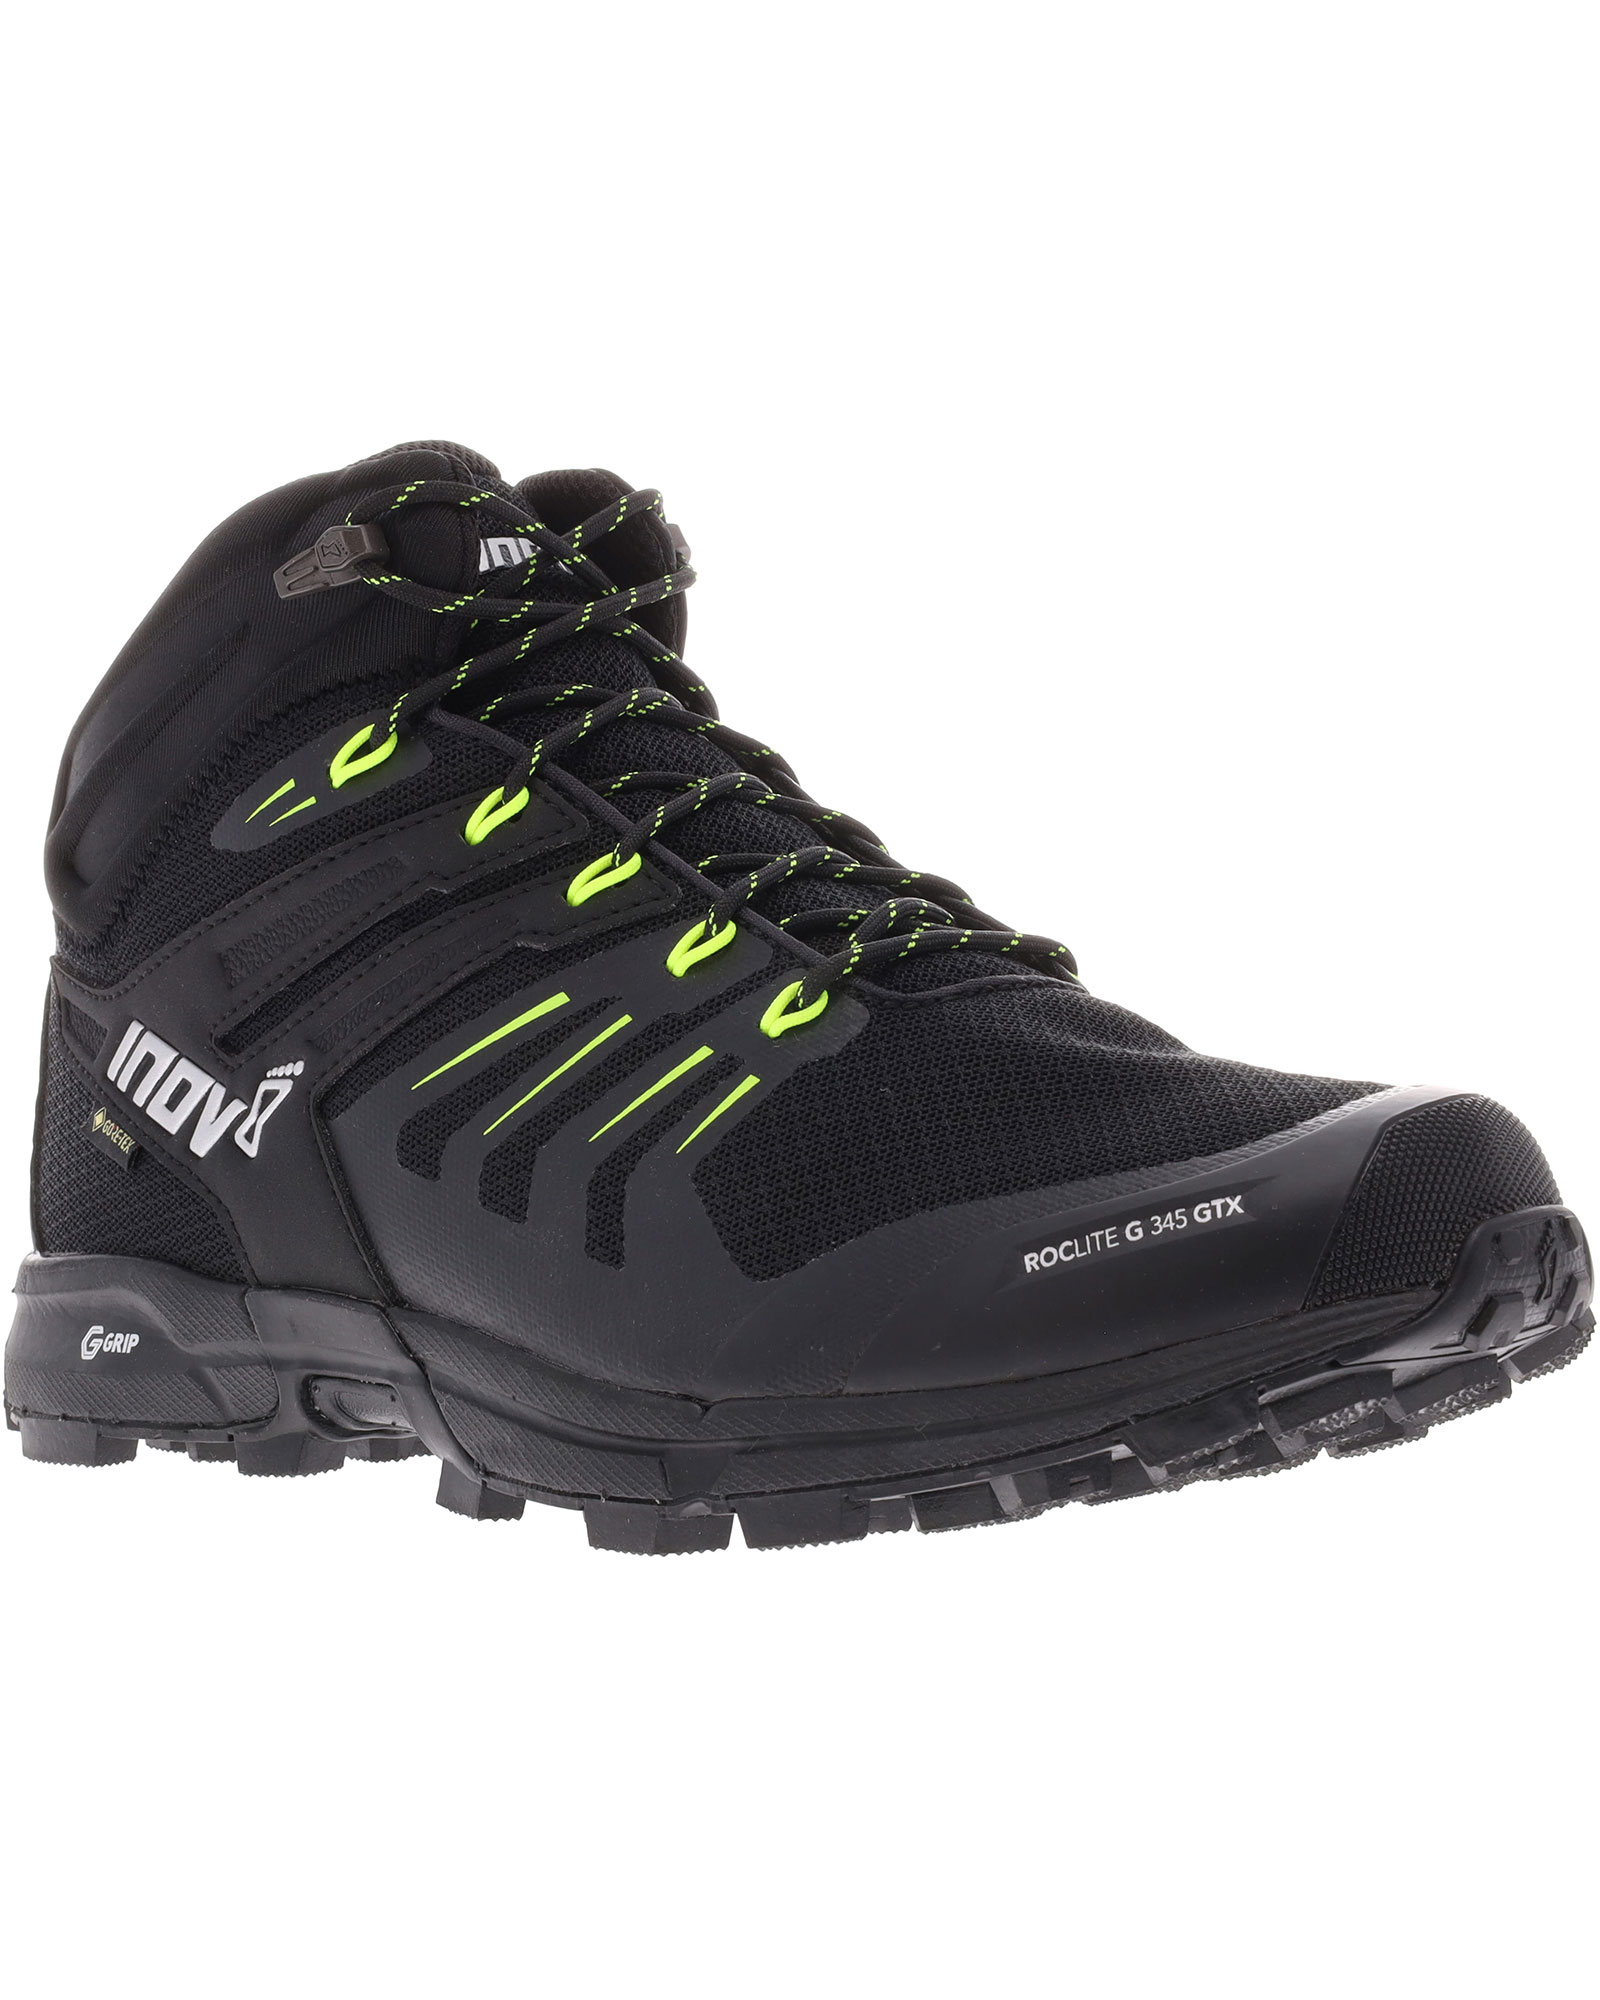 Inov 8 Roclite G 345 V2 GORE TEX Men’s Boots - Black/Lime UK 10.5